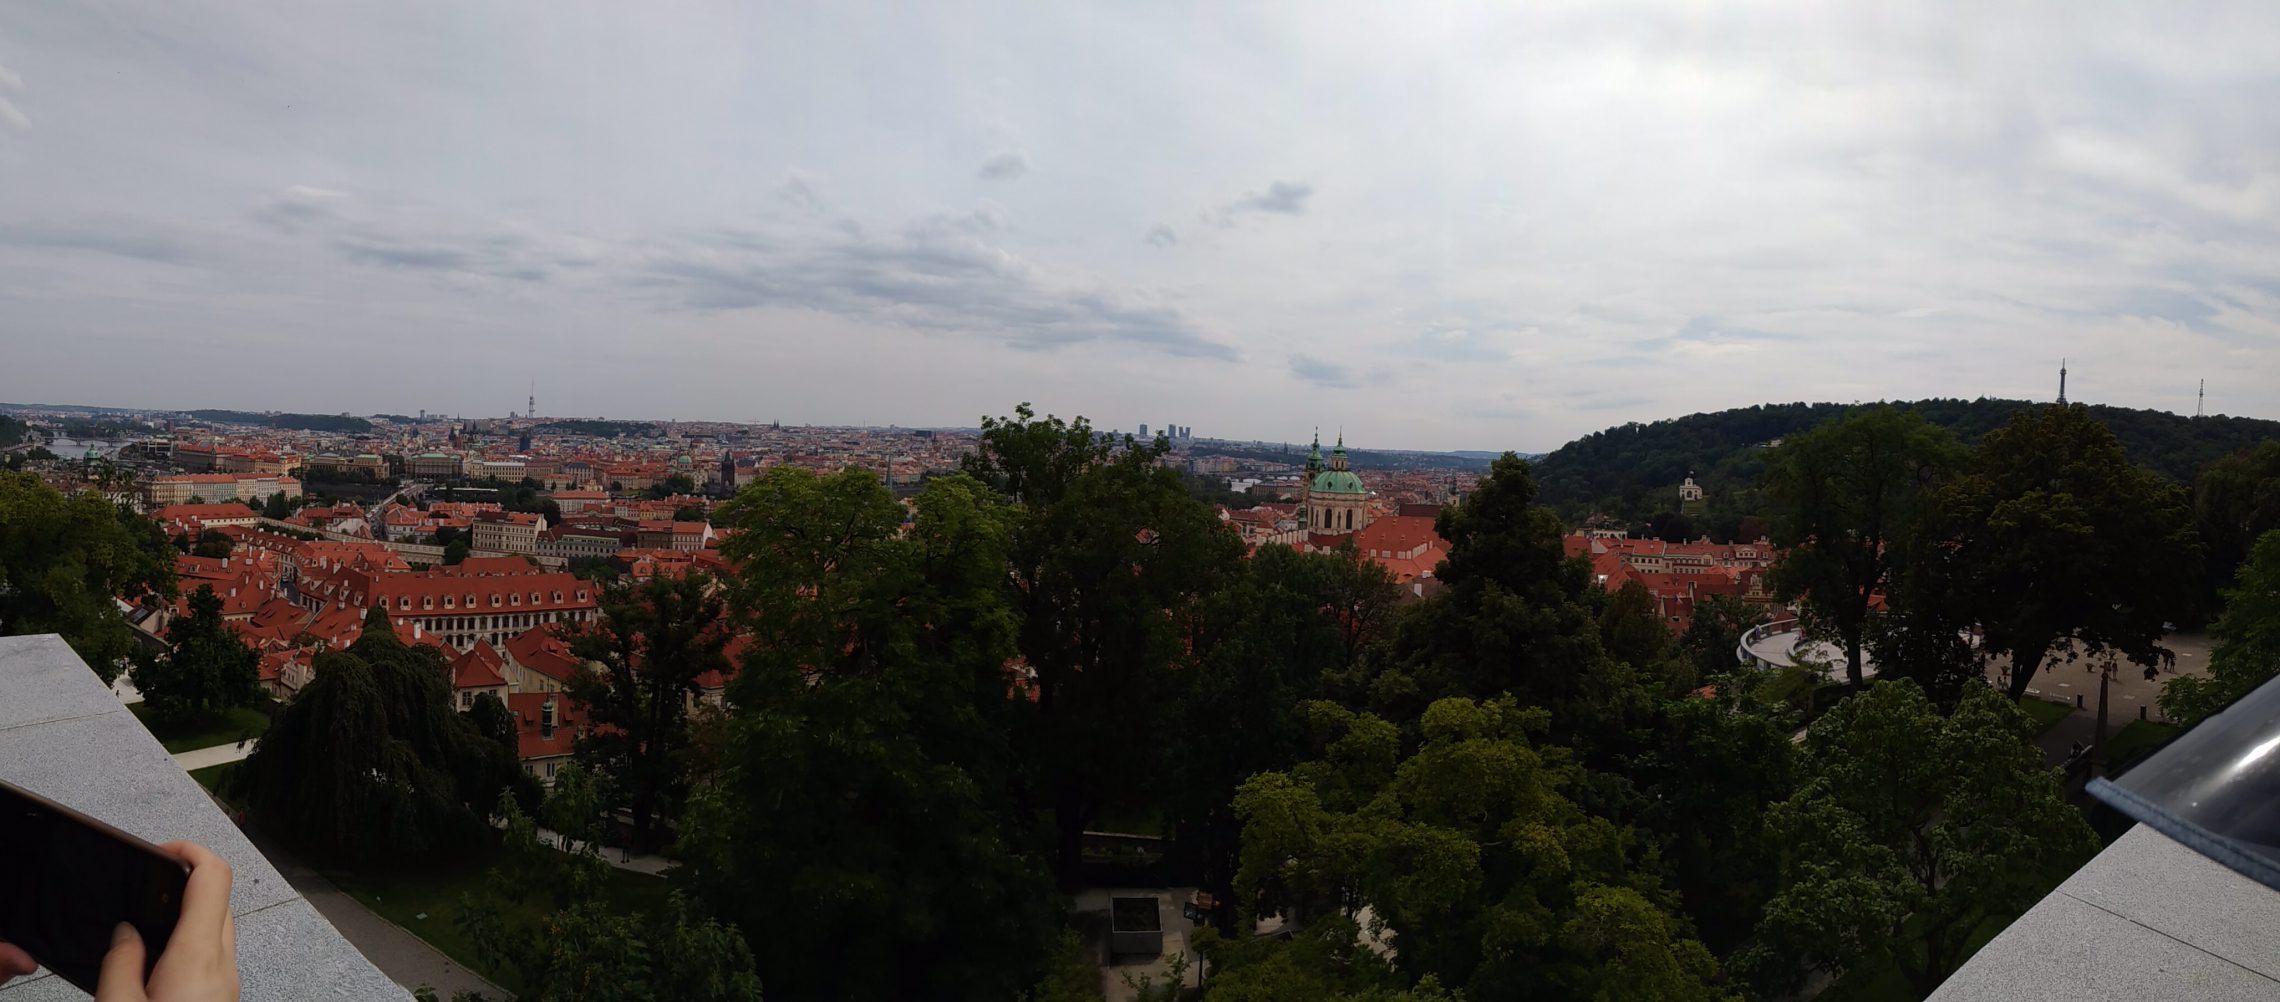 P 20170824 132415 PN - 布拉格之旅 Day2 景點：高堡區、聖維特主教座堂與舊皇宮